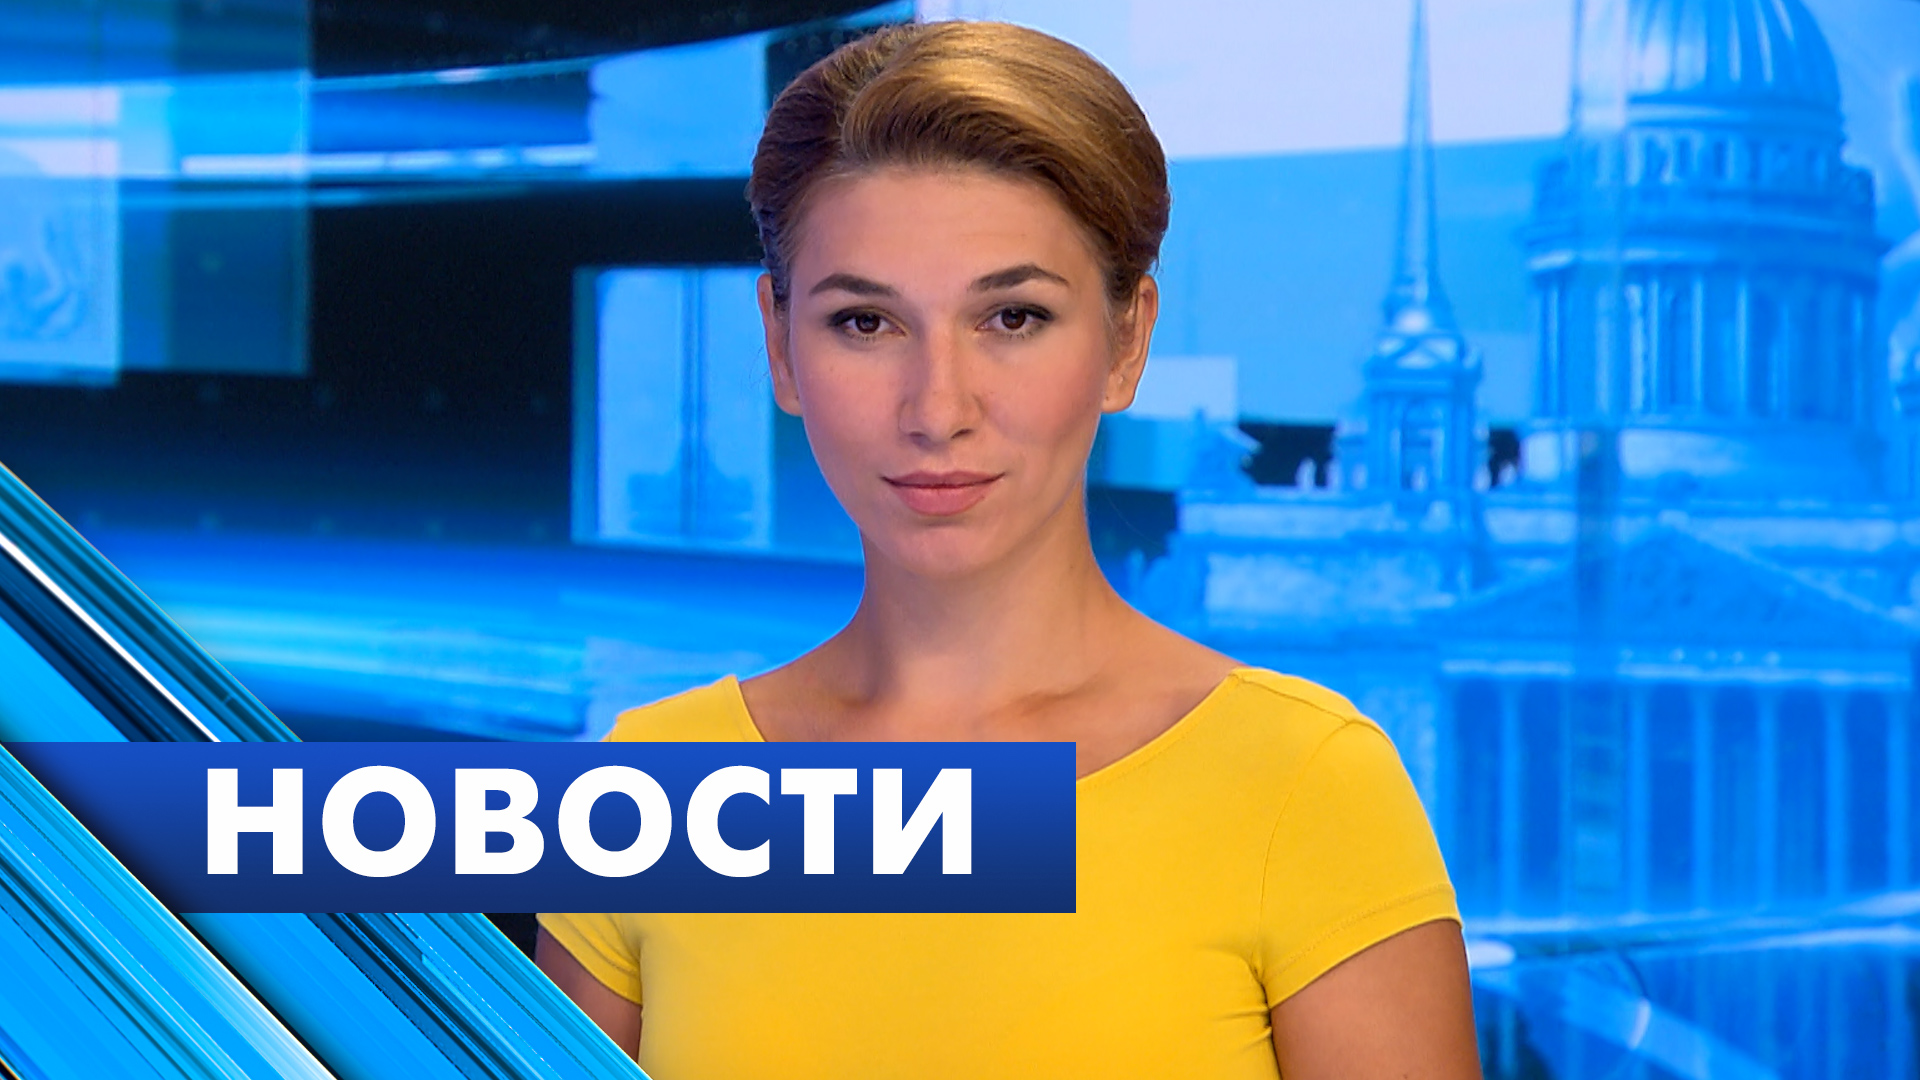 Главные новости Петербурга / 3 августа